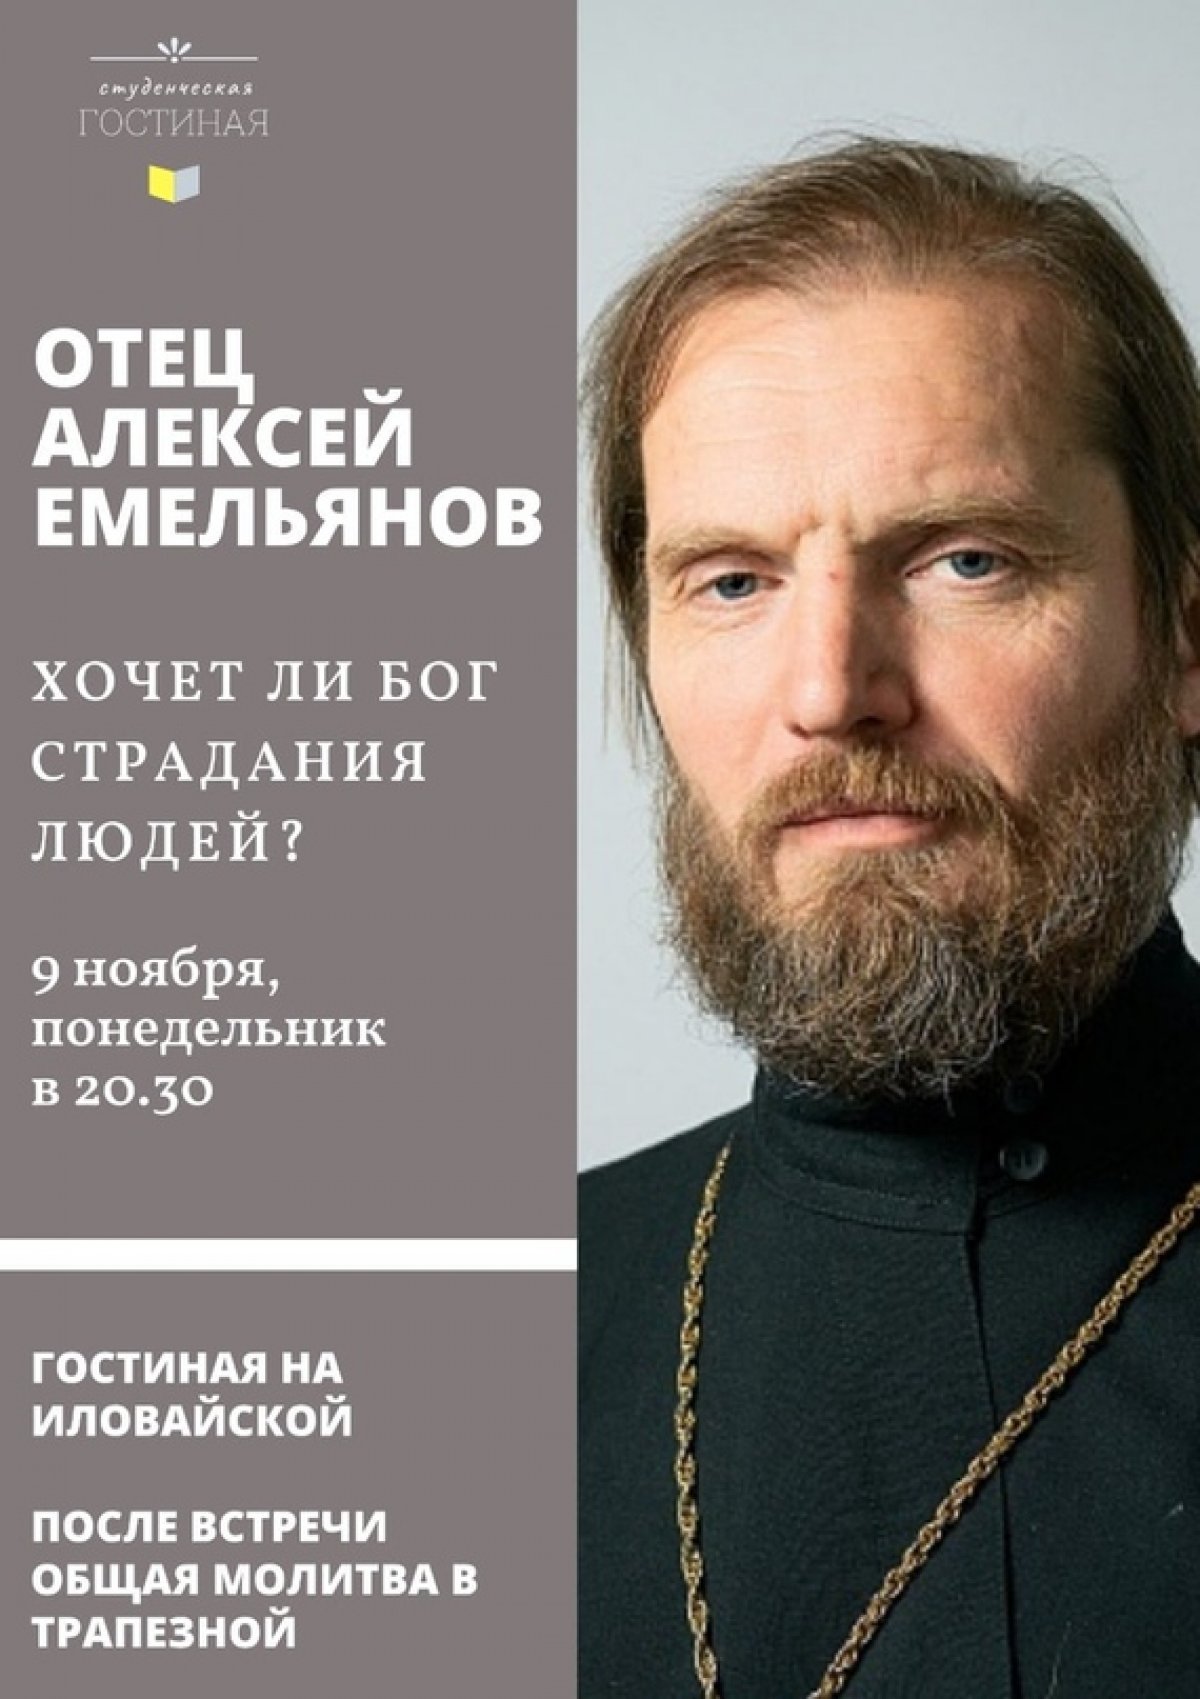 В понедельник, 9 ноября в гостиной на Иловайской состоится беседа с заведующим протоиереем Алексеем Емельяновым, зав. кафедрой библеистики, проректором по воспитательной работе.